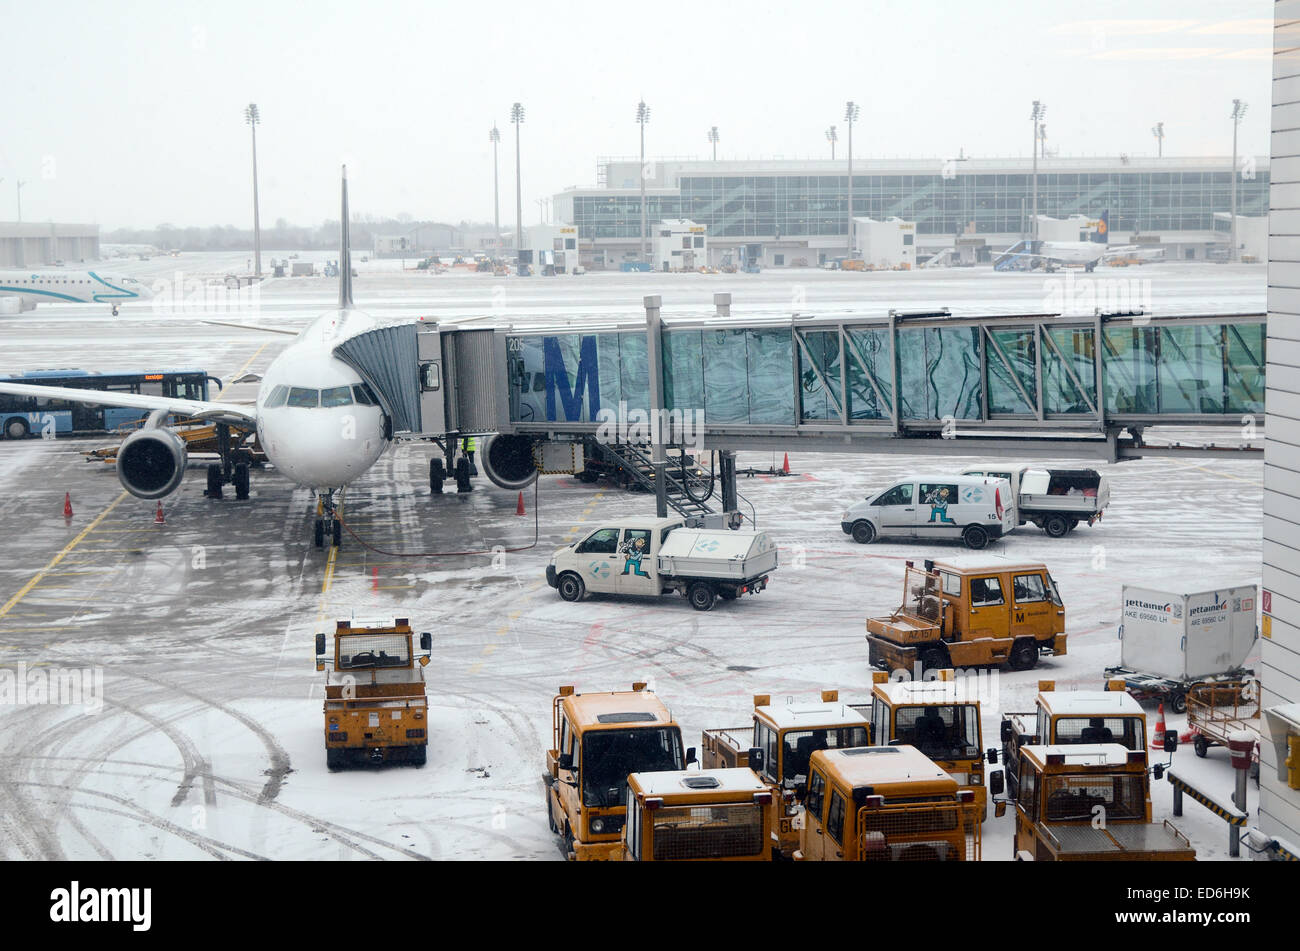 Munich, Alemania. El 29 de diciembre de 2014. Nieve y temperaturas bajo cero causa caos de tráfico, las demoras y cancelaciones de vuelos en muchos aeropuertos europeos como Munich Alemania. Crédito: Chris Hellier/Alamy Live News Foto de stock